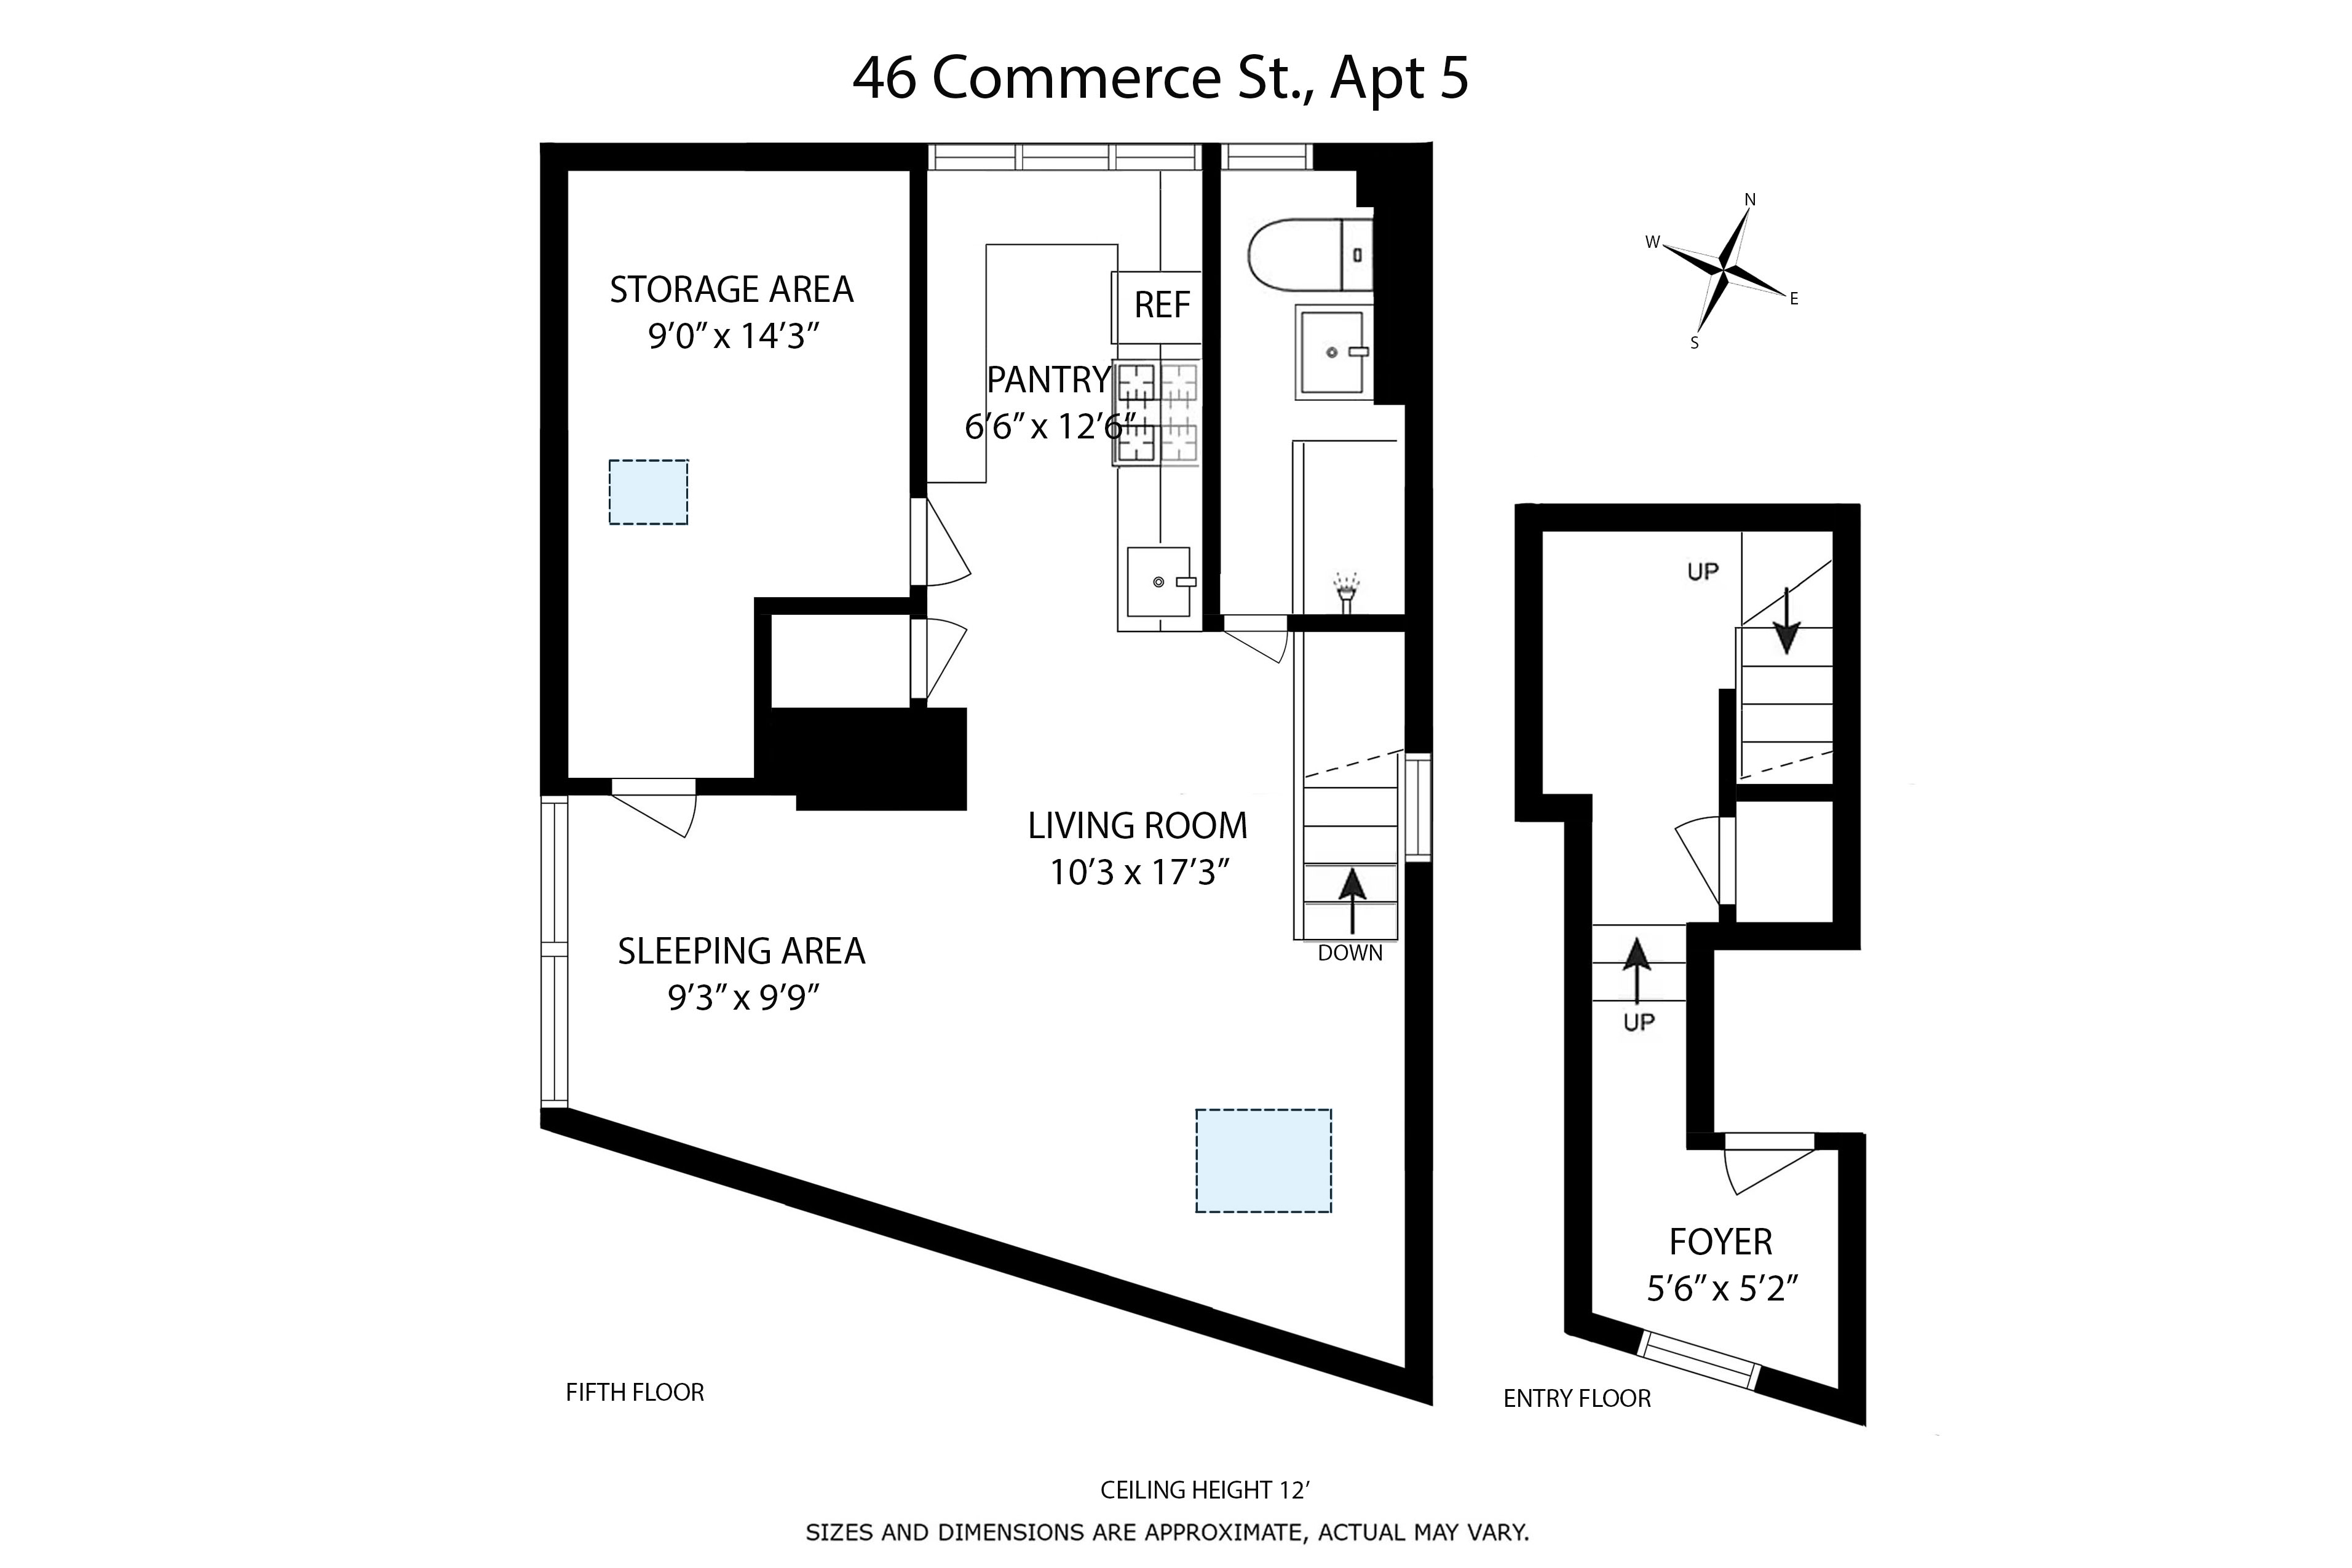 Floorplan for 46 Commerce Street, 5